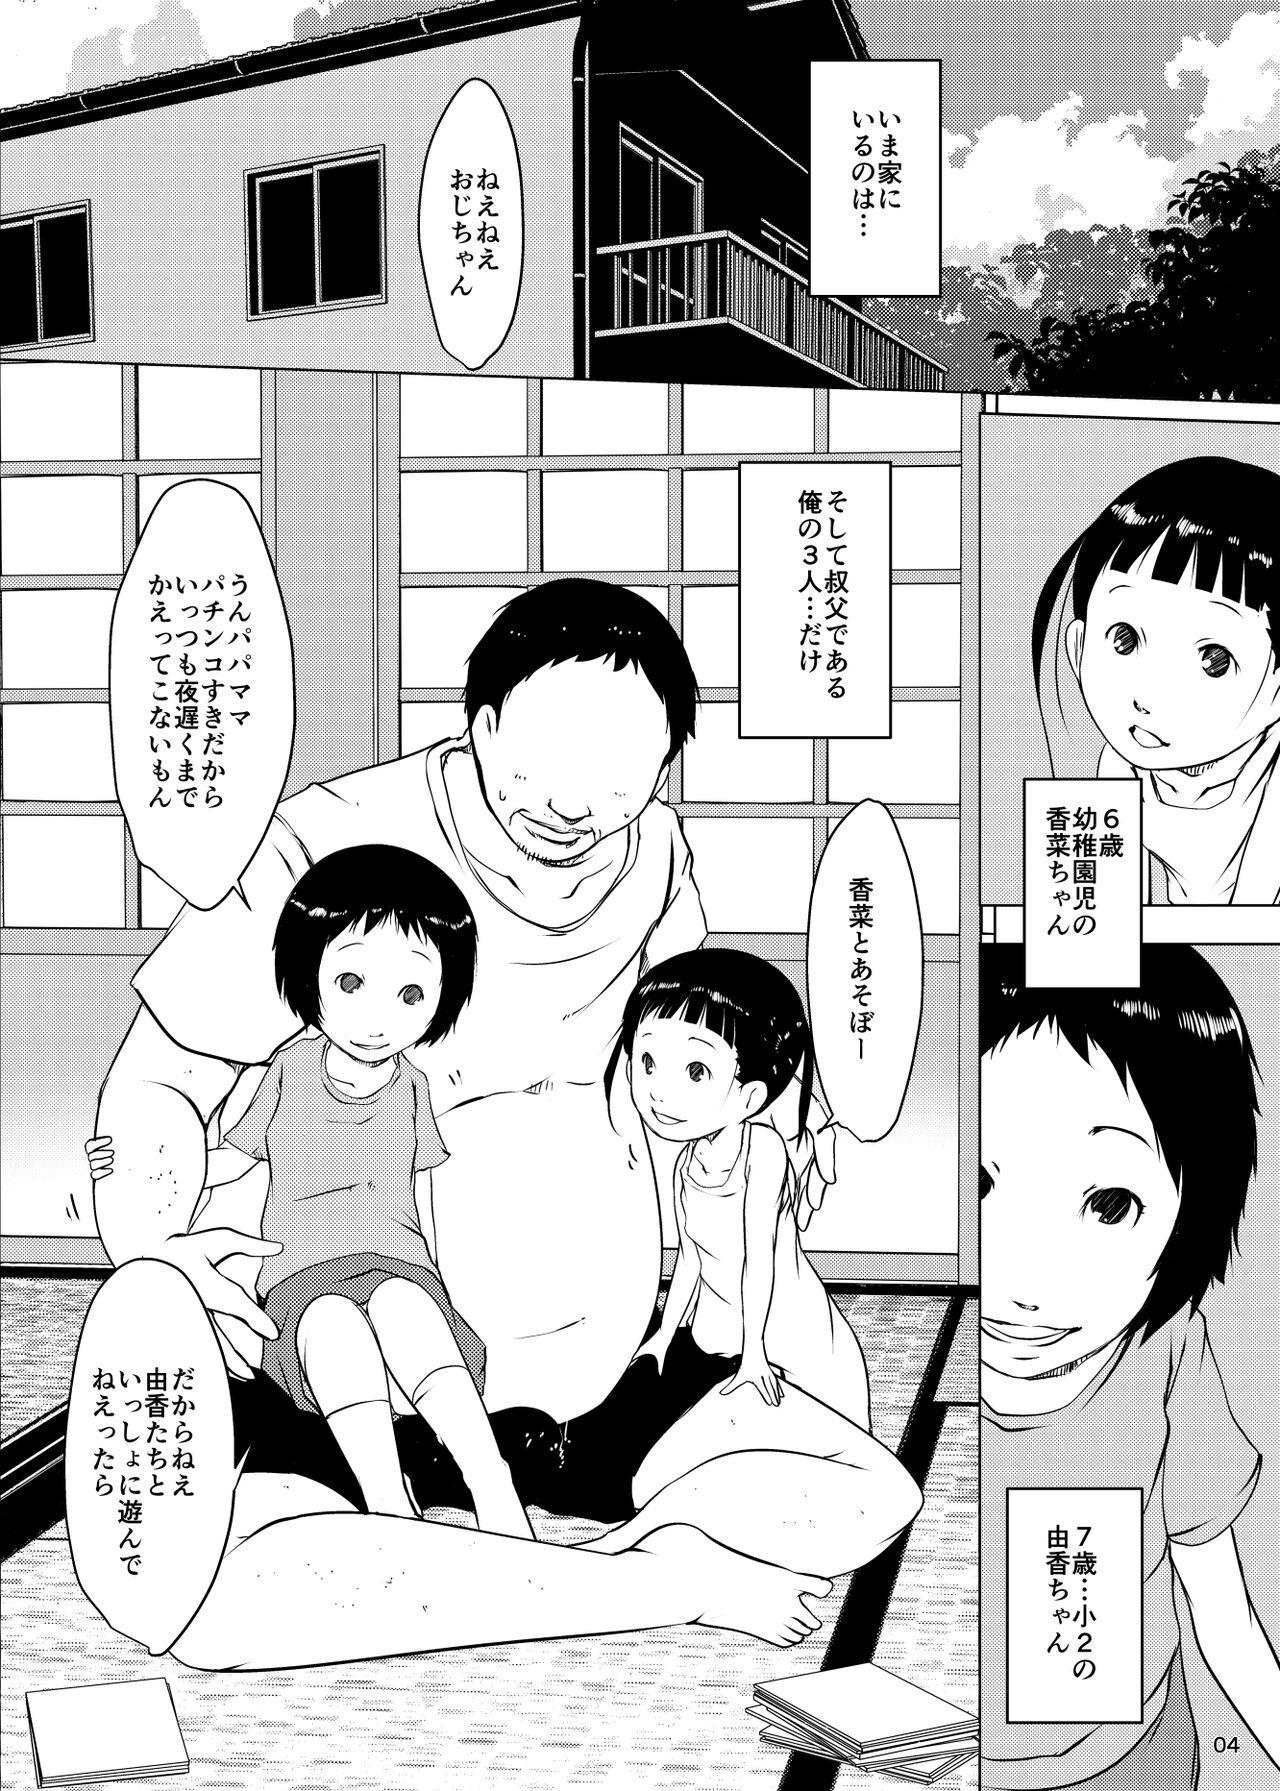 Hiddencam Jian Hassei Re:05 + Jian Hassei Puni Pedo Kindergarten 2022 Wet Cunt - Page 3